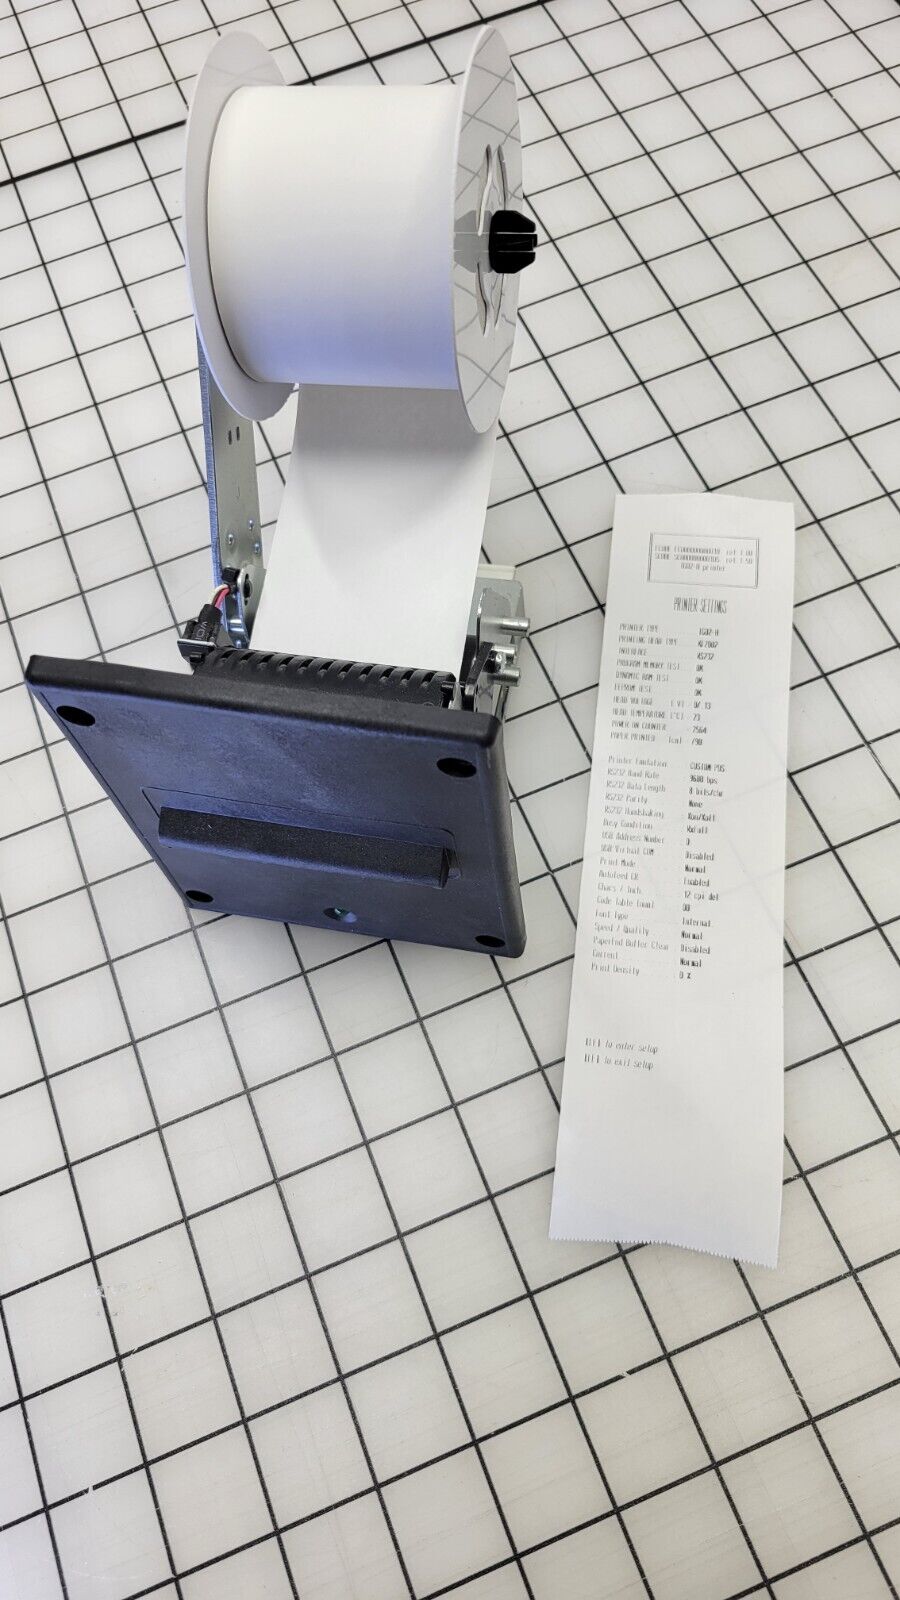 Custom TG02H Thermal Printer - Used